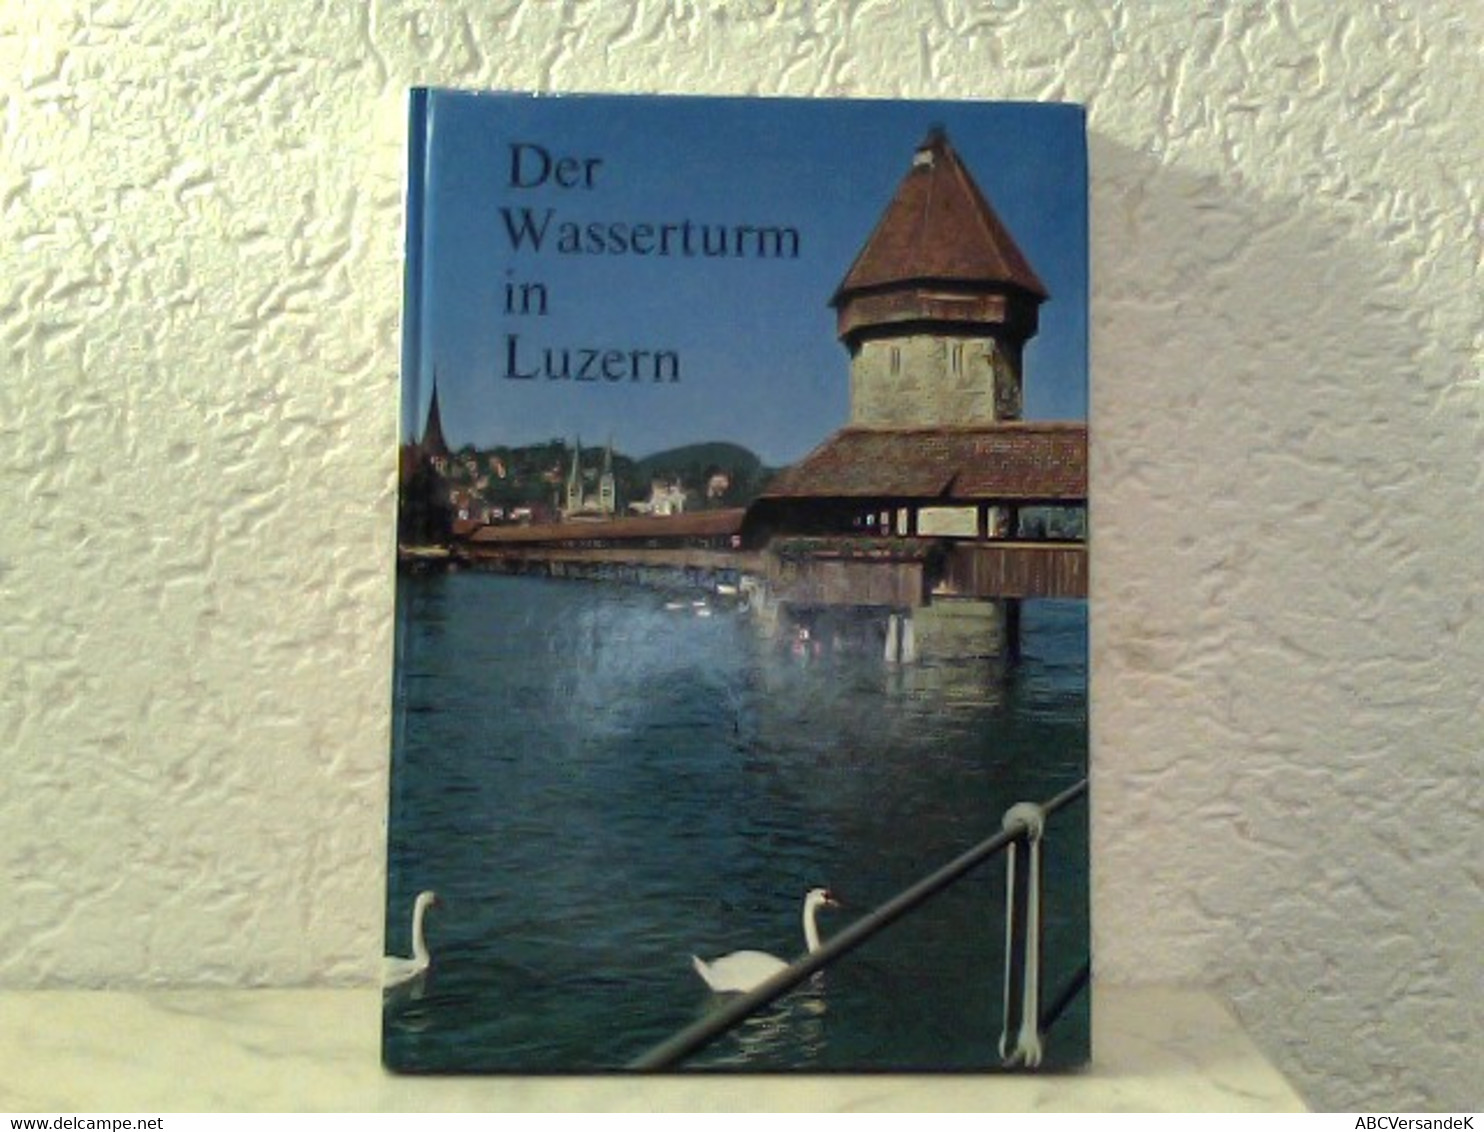 Der Wasserturm In Luzern - Herausgegeben Als Beitrag Zur 800 - Jahr - Feier Der Stadt Luzern - Svizzera